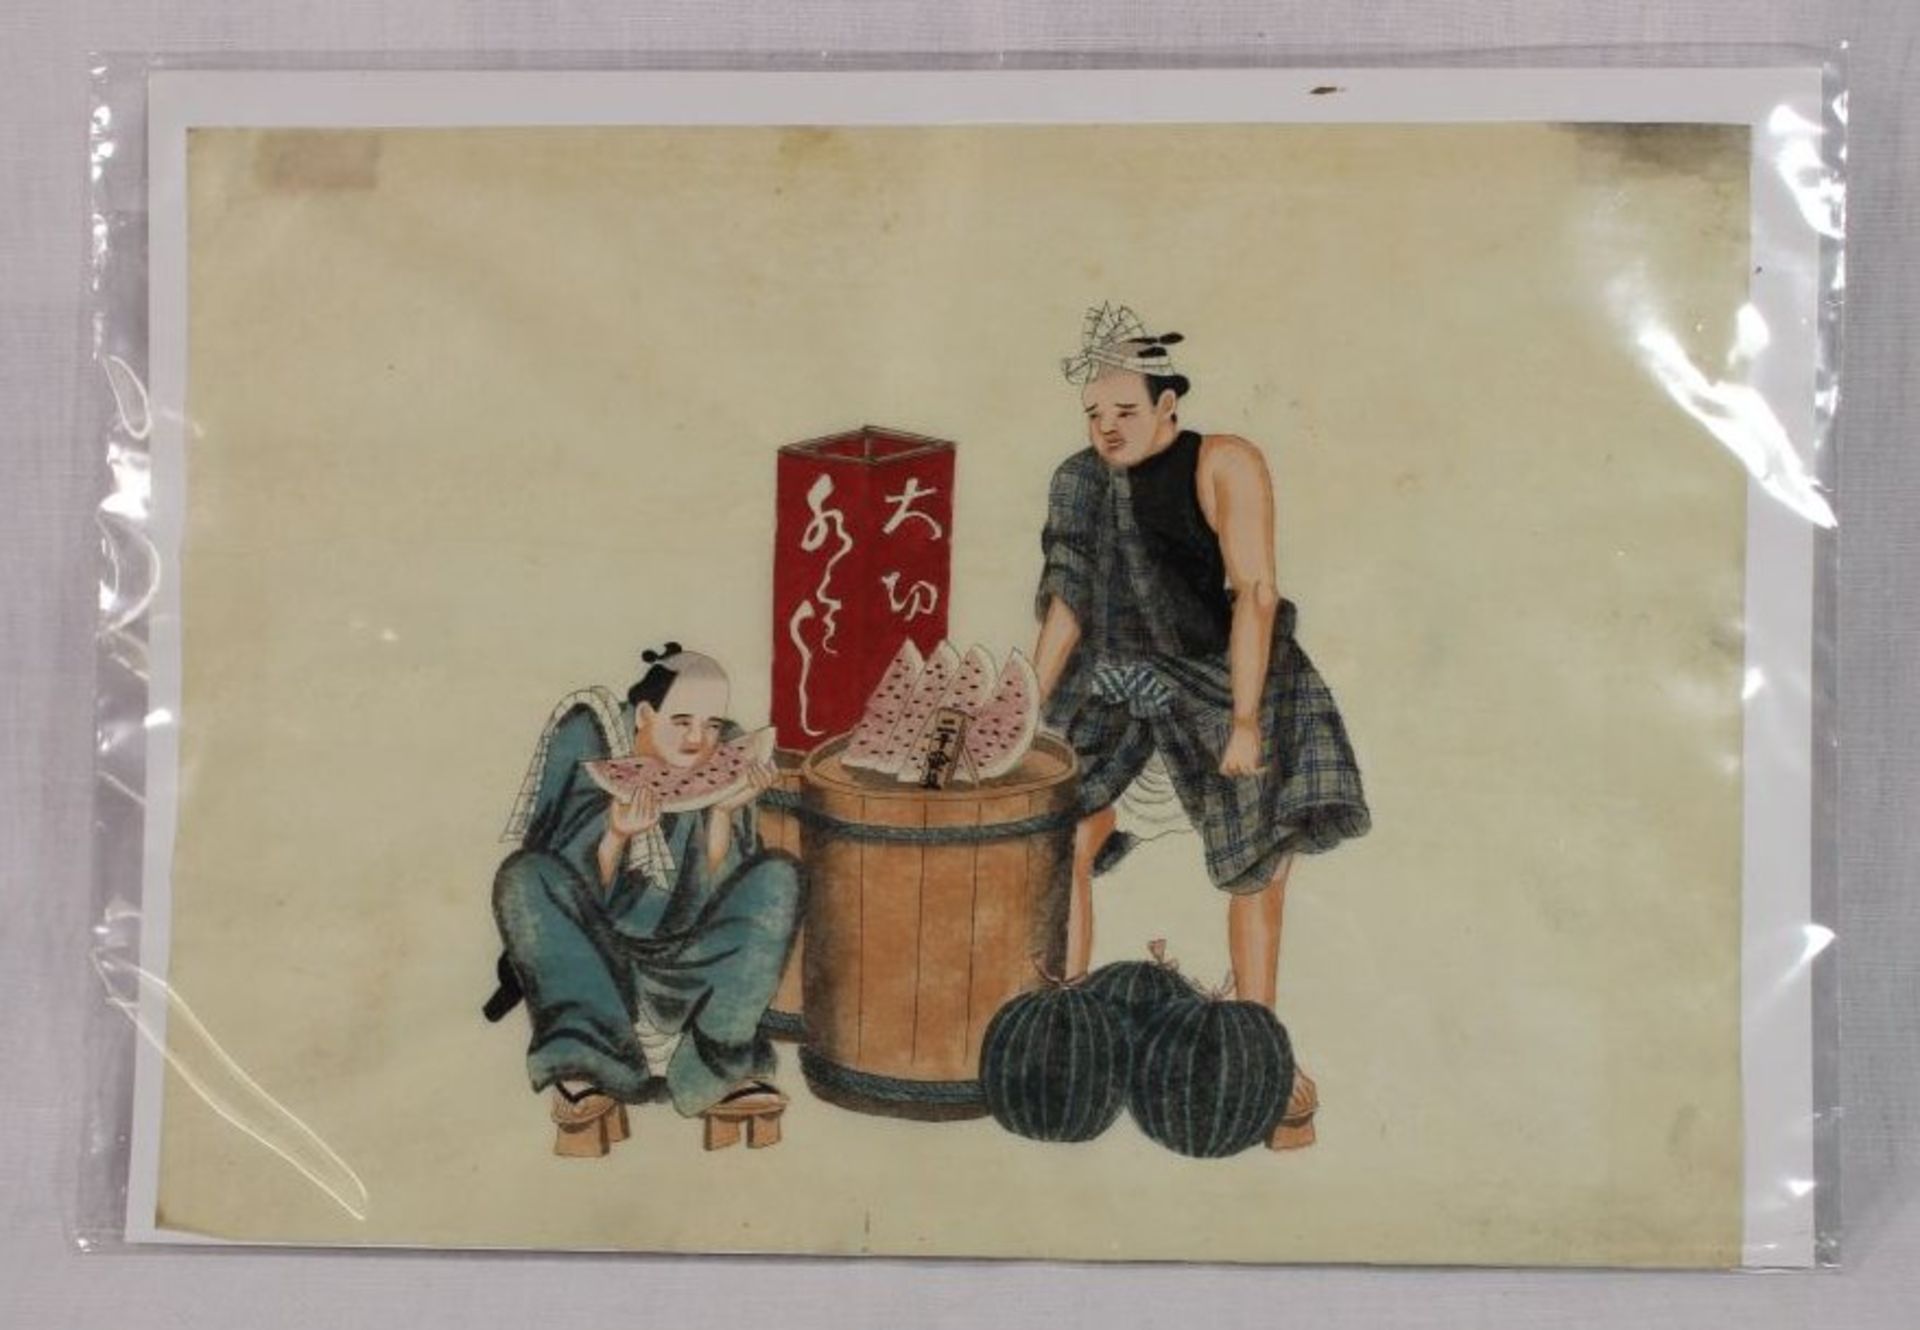 Tuschezeichnung auf Washi Papier, unsigniert, Japan um 1900, ungerahmt, 20 x 28cm. - Image 2 of 2